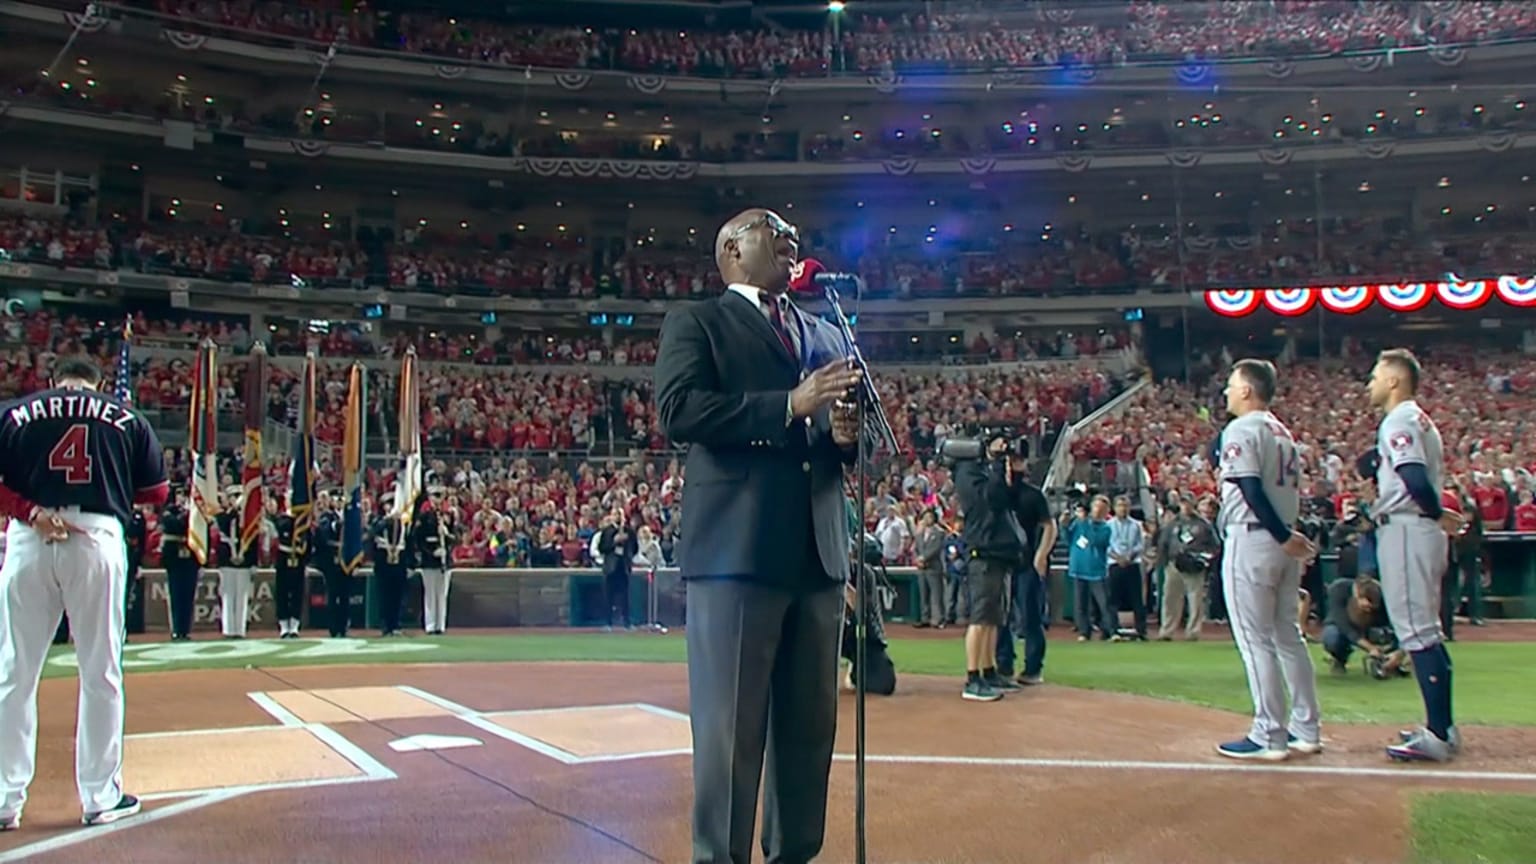 D.C. Washington performs anthem